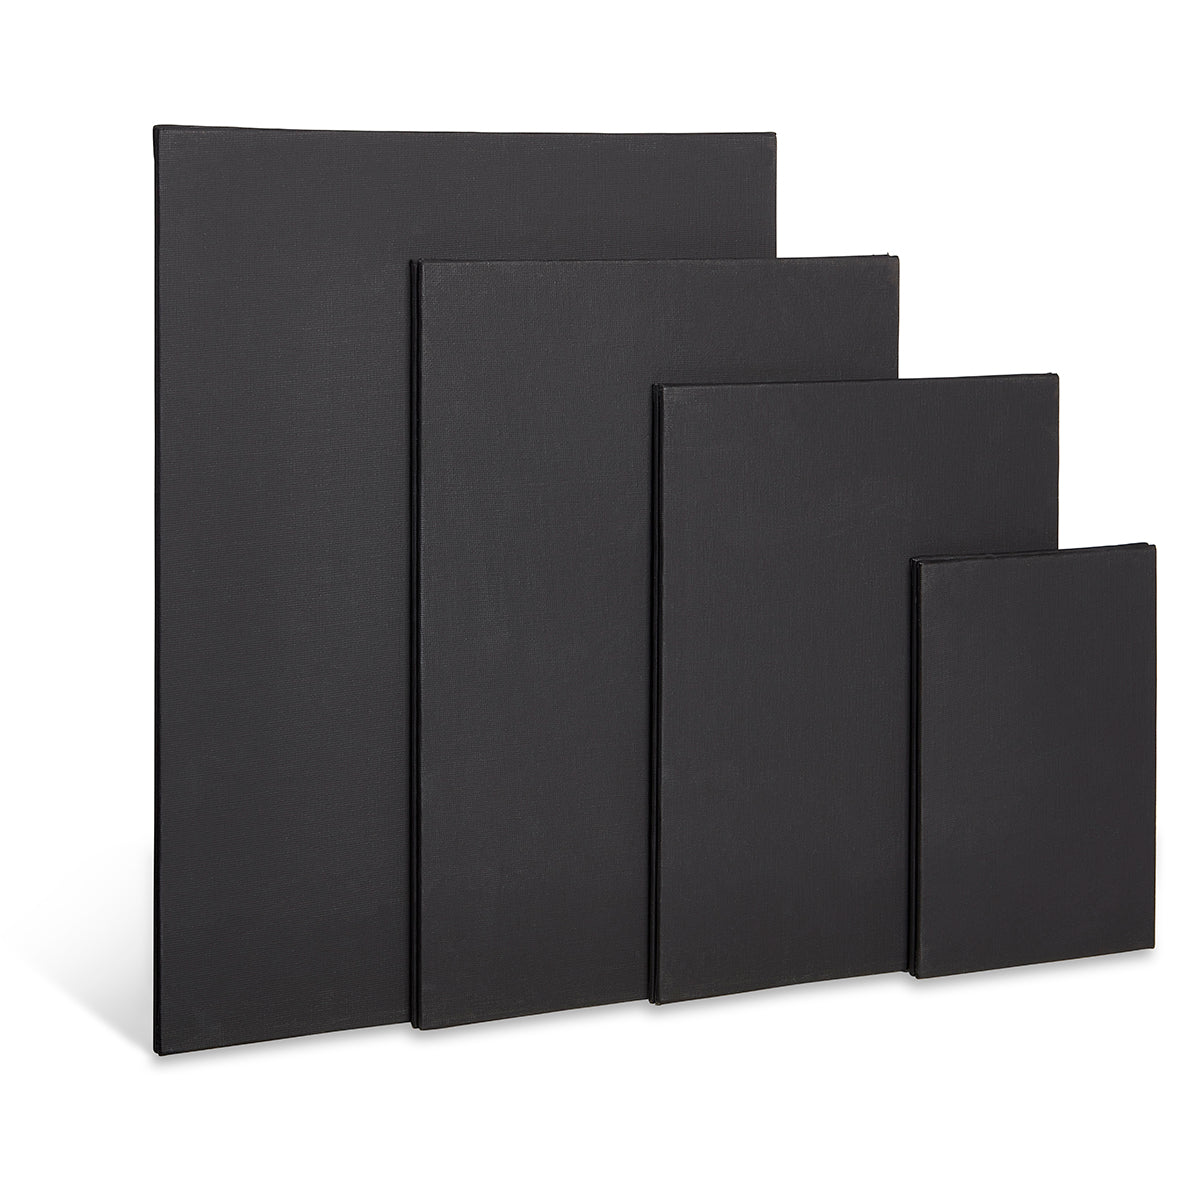 Storage Box Bundle - 12x12, 8x8 & A4 Slim